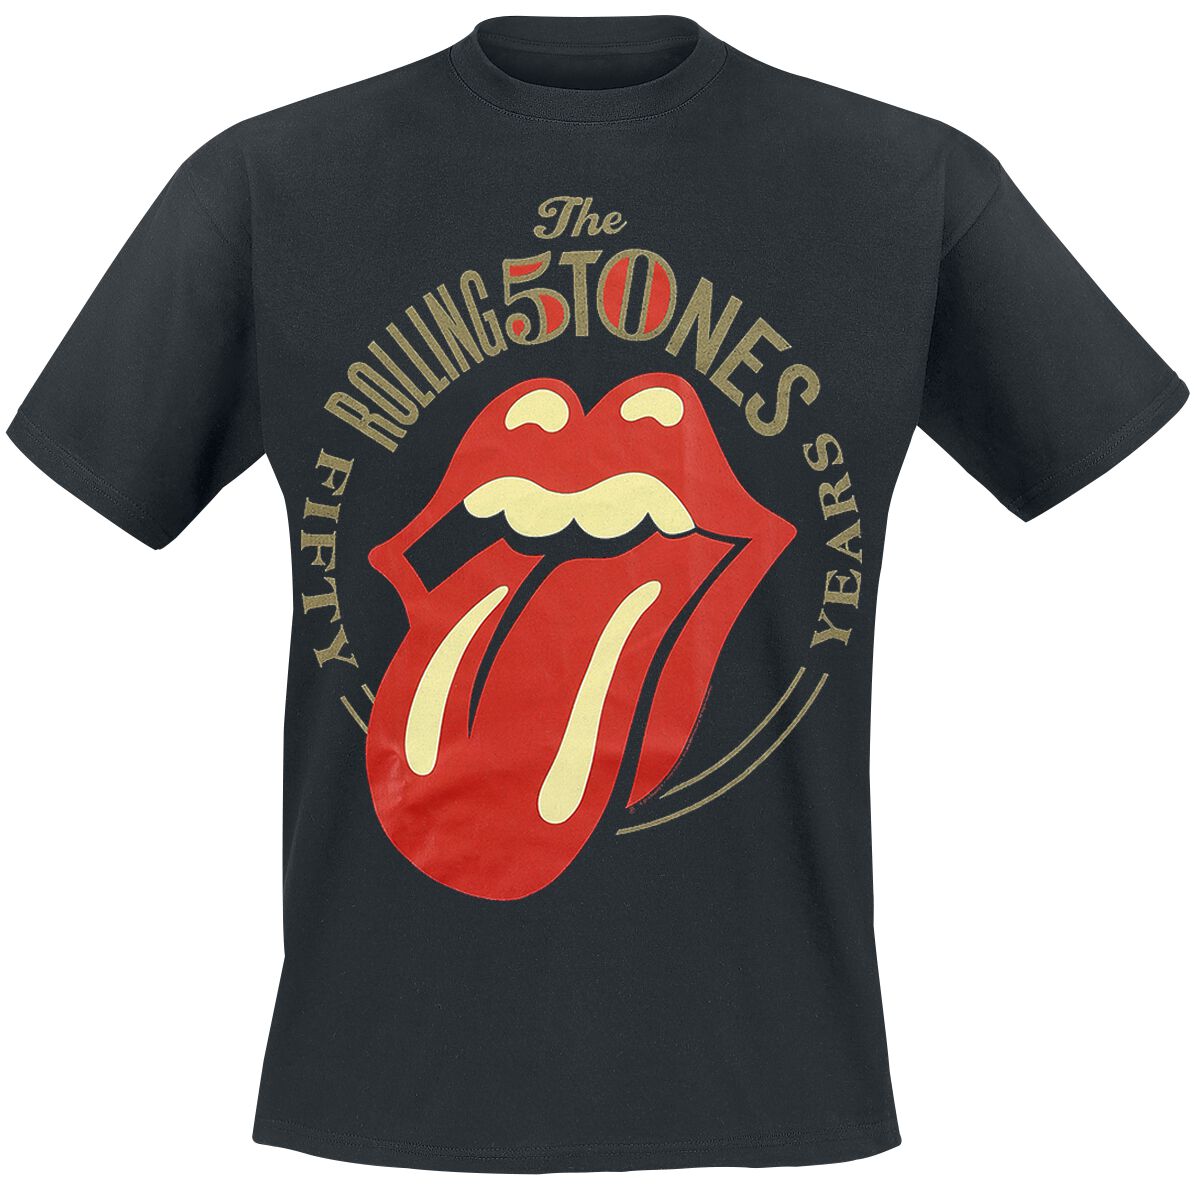 The Rolling Stones T-Shirt - 50 Years - M bis 3XL - für Männer - Größe 3XL - schwarz  - Lizenziertes Merchandise!